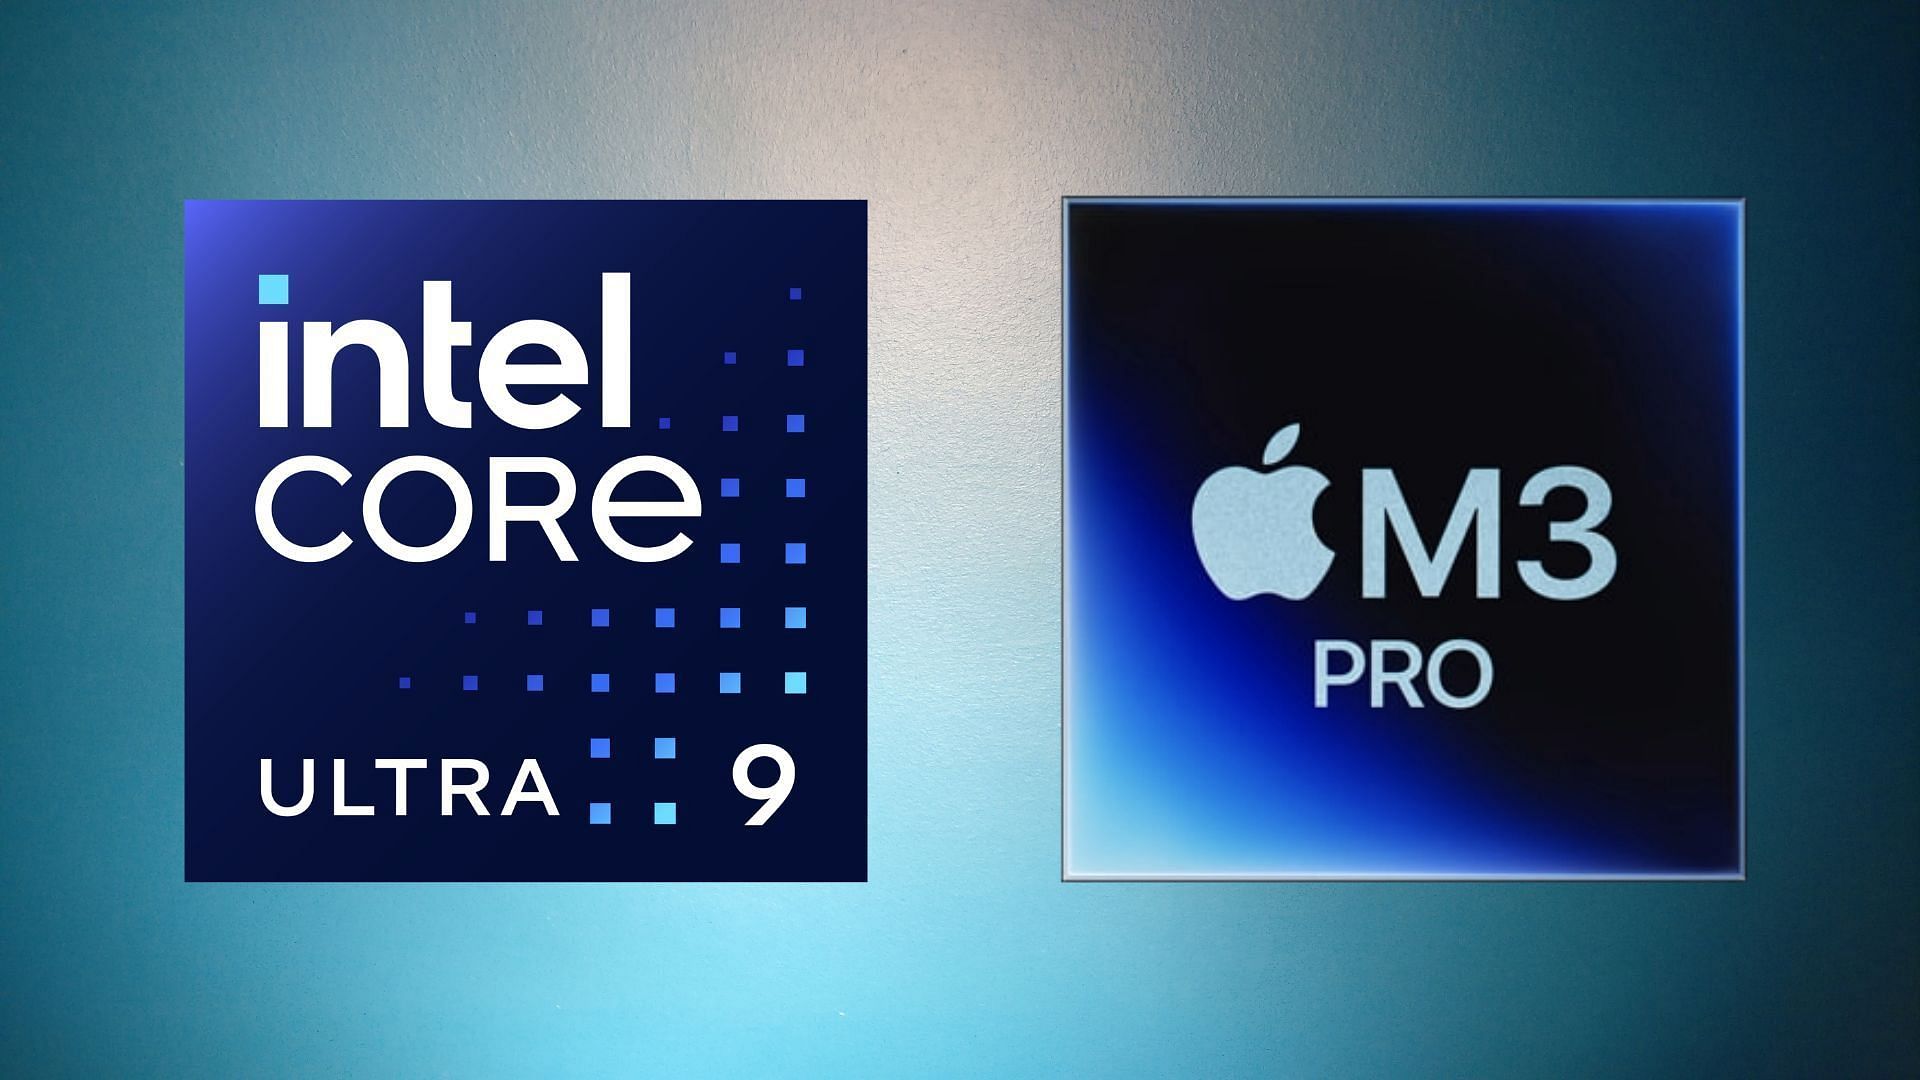 The Intel Core Ultra 9 185H vs Apple M3 Pro comparison (Image via Intel, Apple)